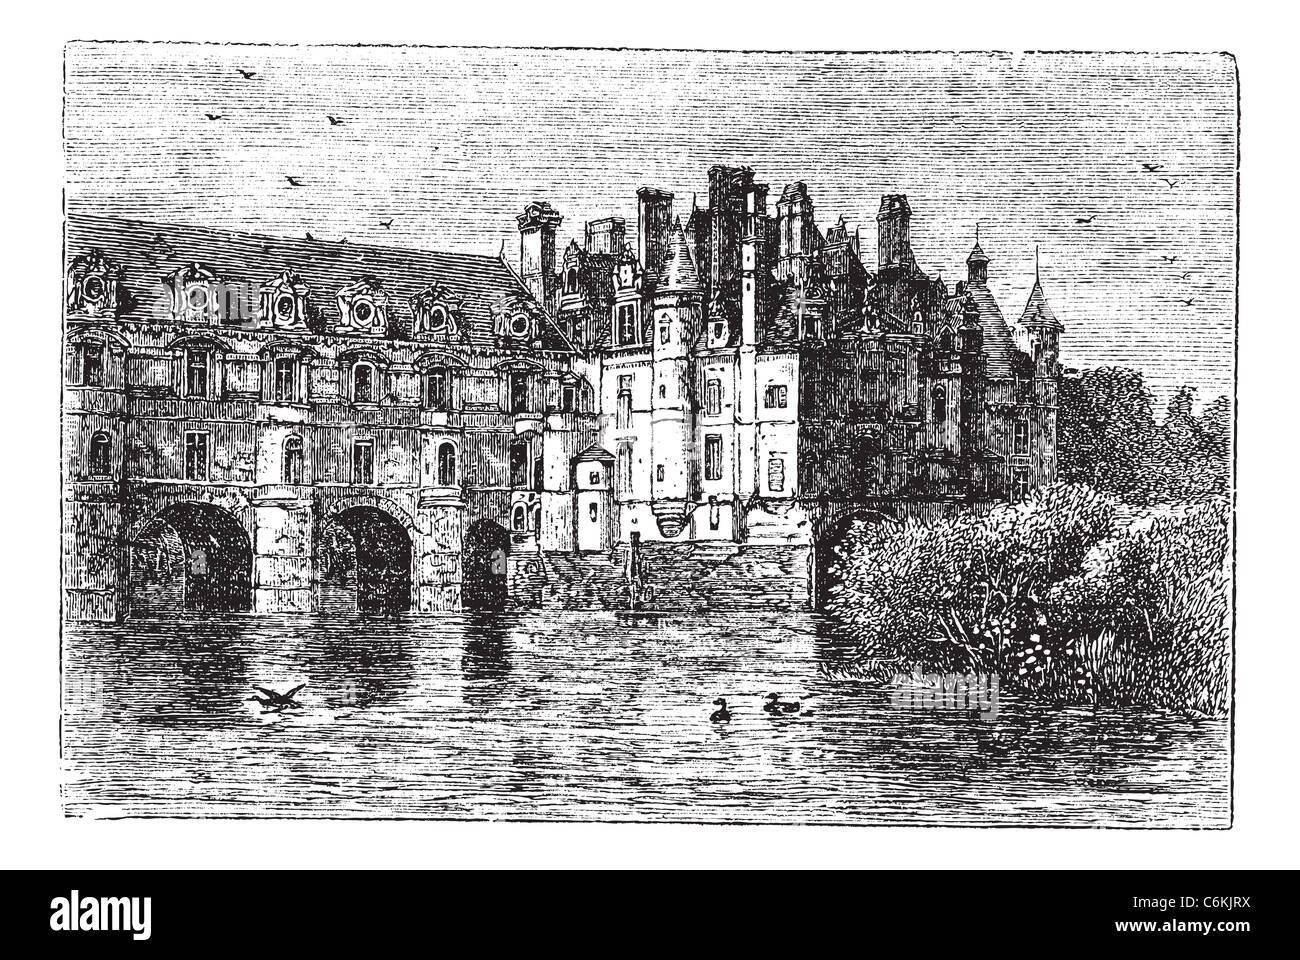 Castillo de Chenonceau, en Chenonceaux, Francia, durante la década de 1890, vintage grabado. Ilustración grabado antiguo del castillo de Chenonceau. Foto de stock